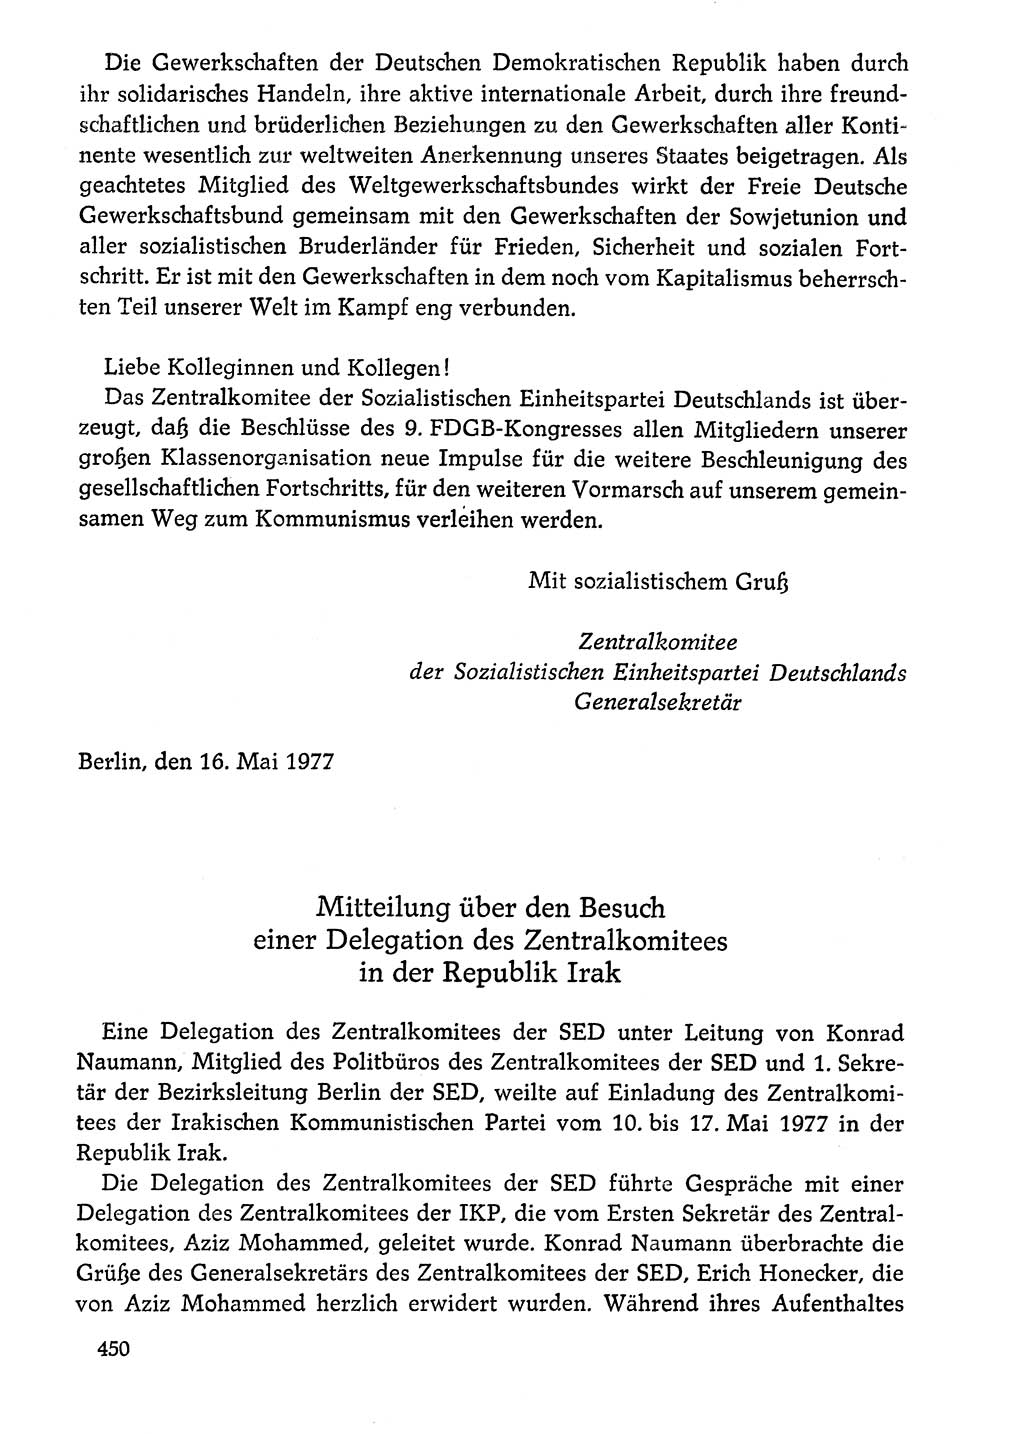 Dokumente der Sozialistischen Einheitspartei Deutschlands (SED) [Deutsche Demokratische Republik (DDR)] 1976-1977, Seite 450 (Dok. SED DDR 1976-1977, S. 450)